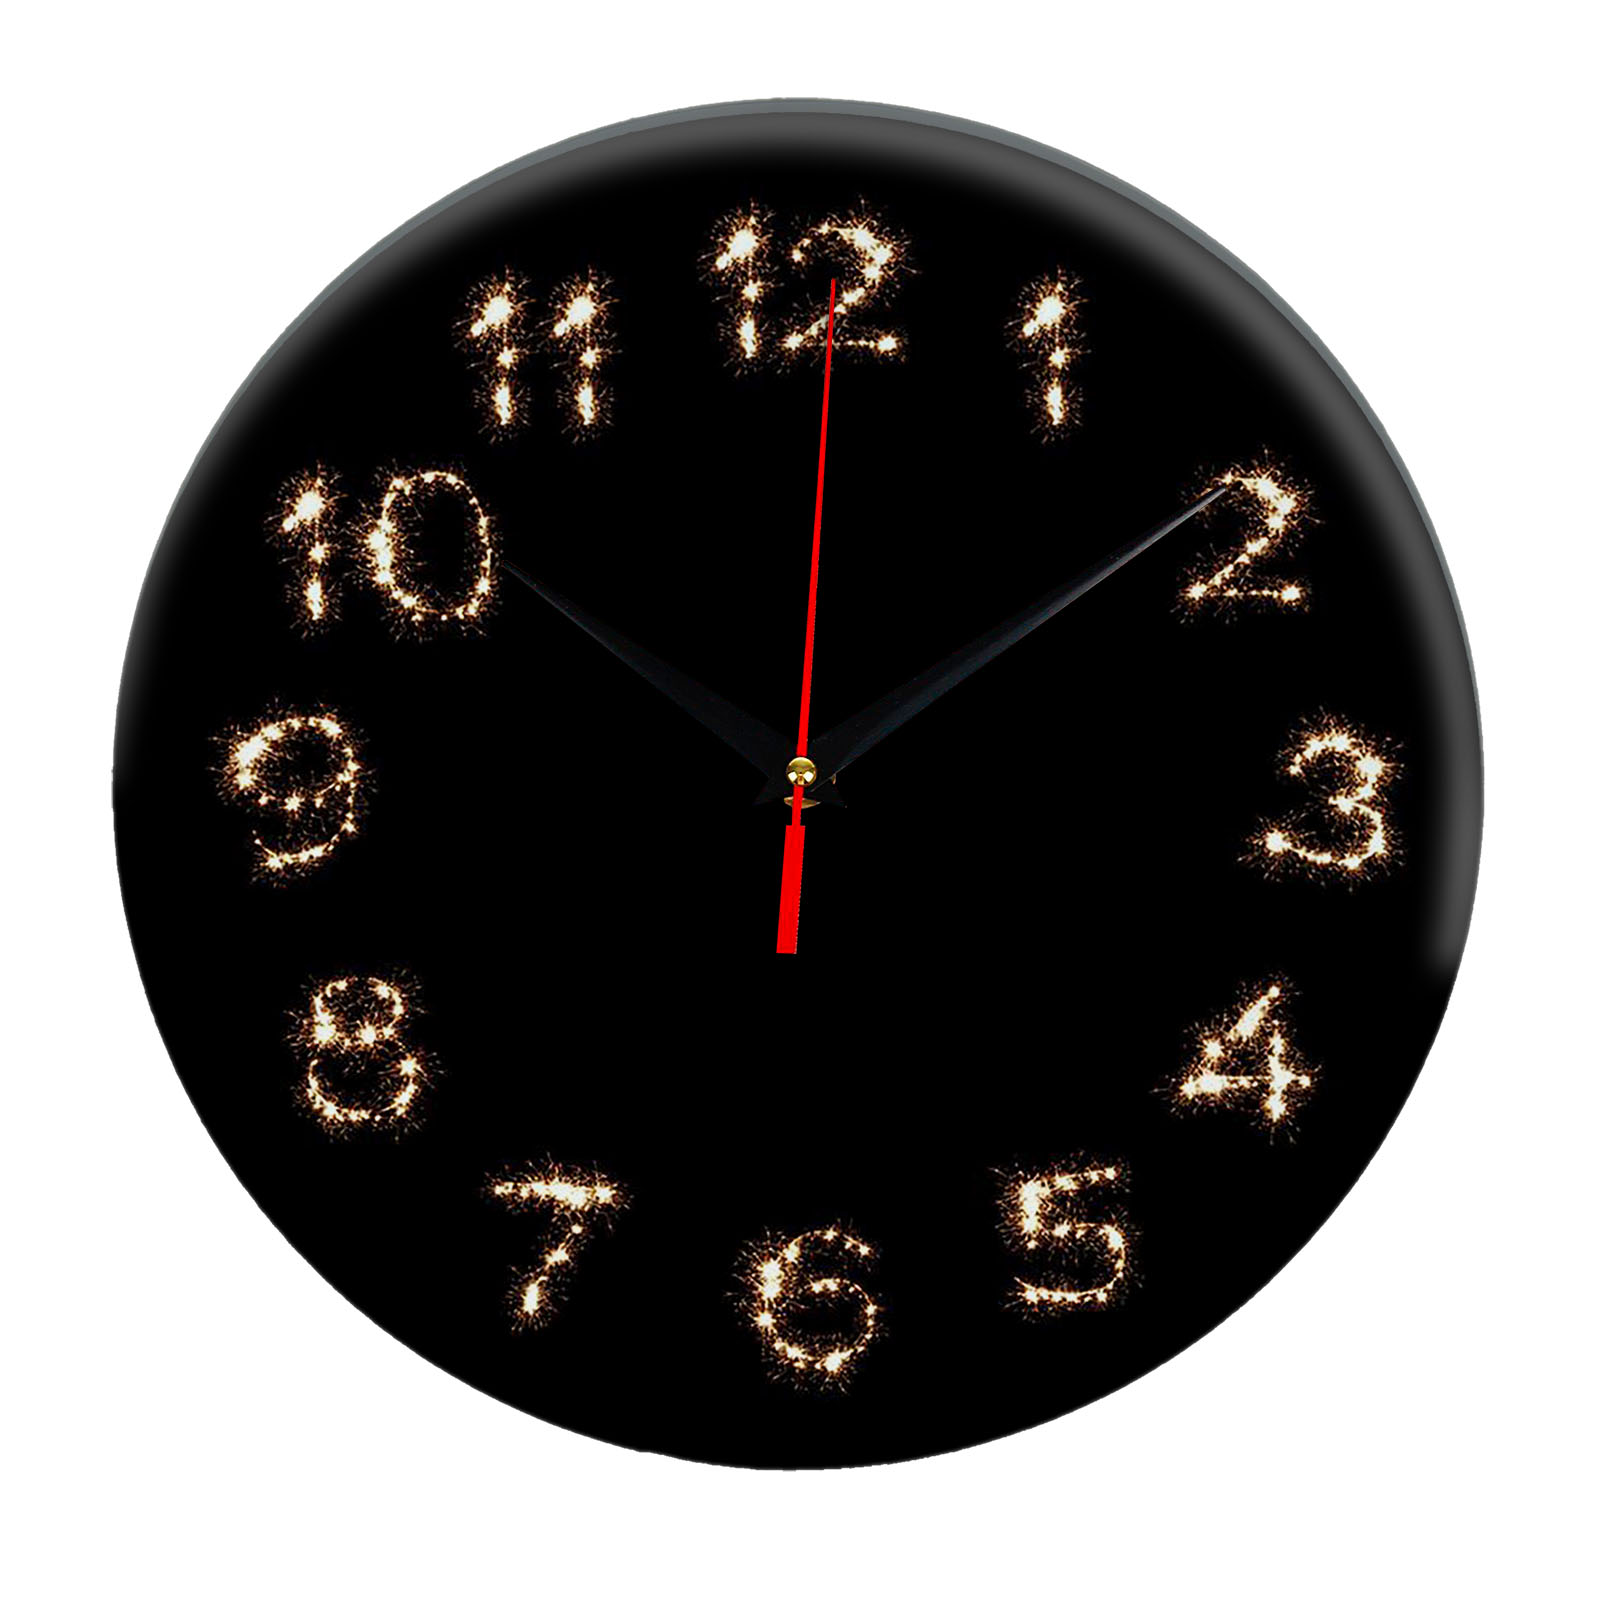 14 д в часах. Часы 3d. 3d часы 5 am. Часы настенные Reluce qh7126d. Часы 3d картинка.